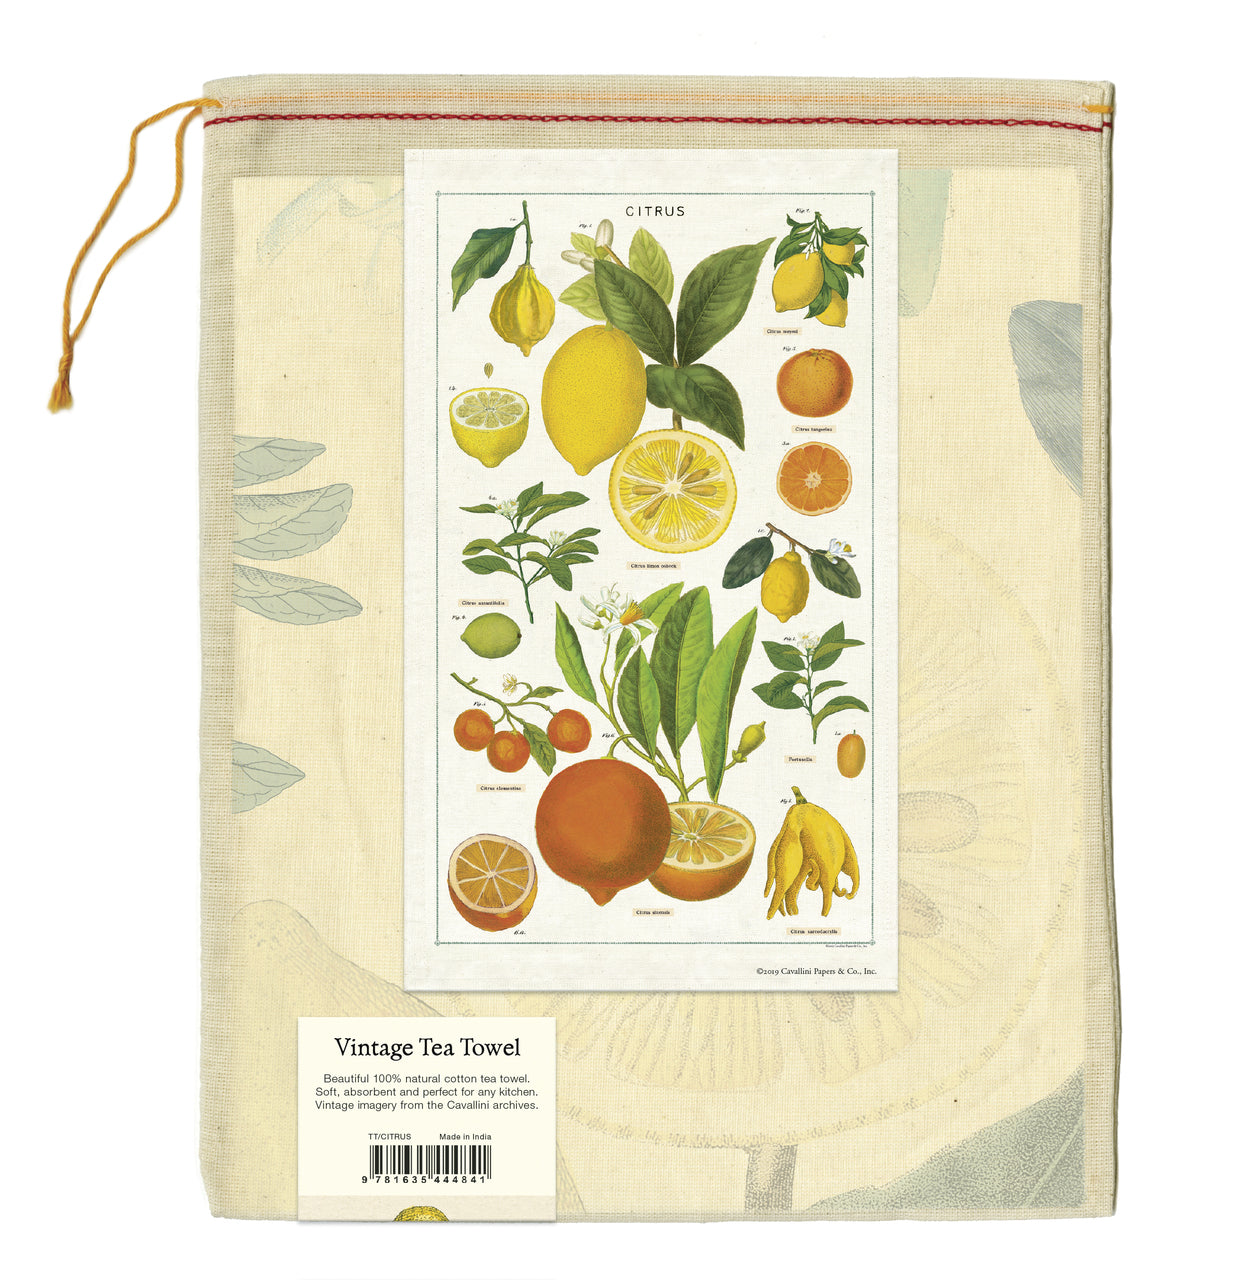 Cavallini & Co. natural cotton tea towels measure 19" x 31.75" (48cm x 80cm).

